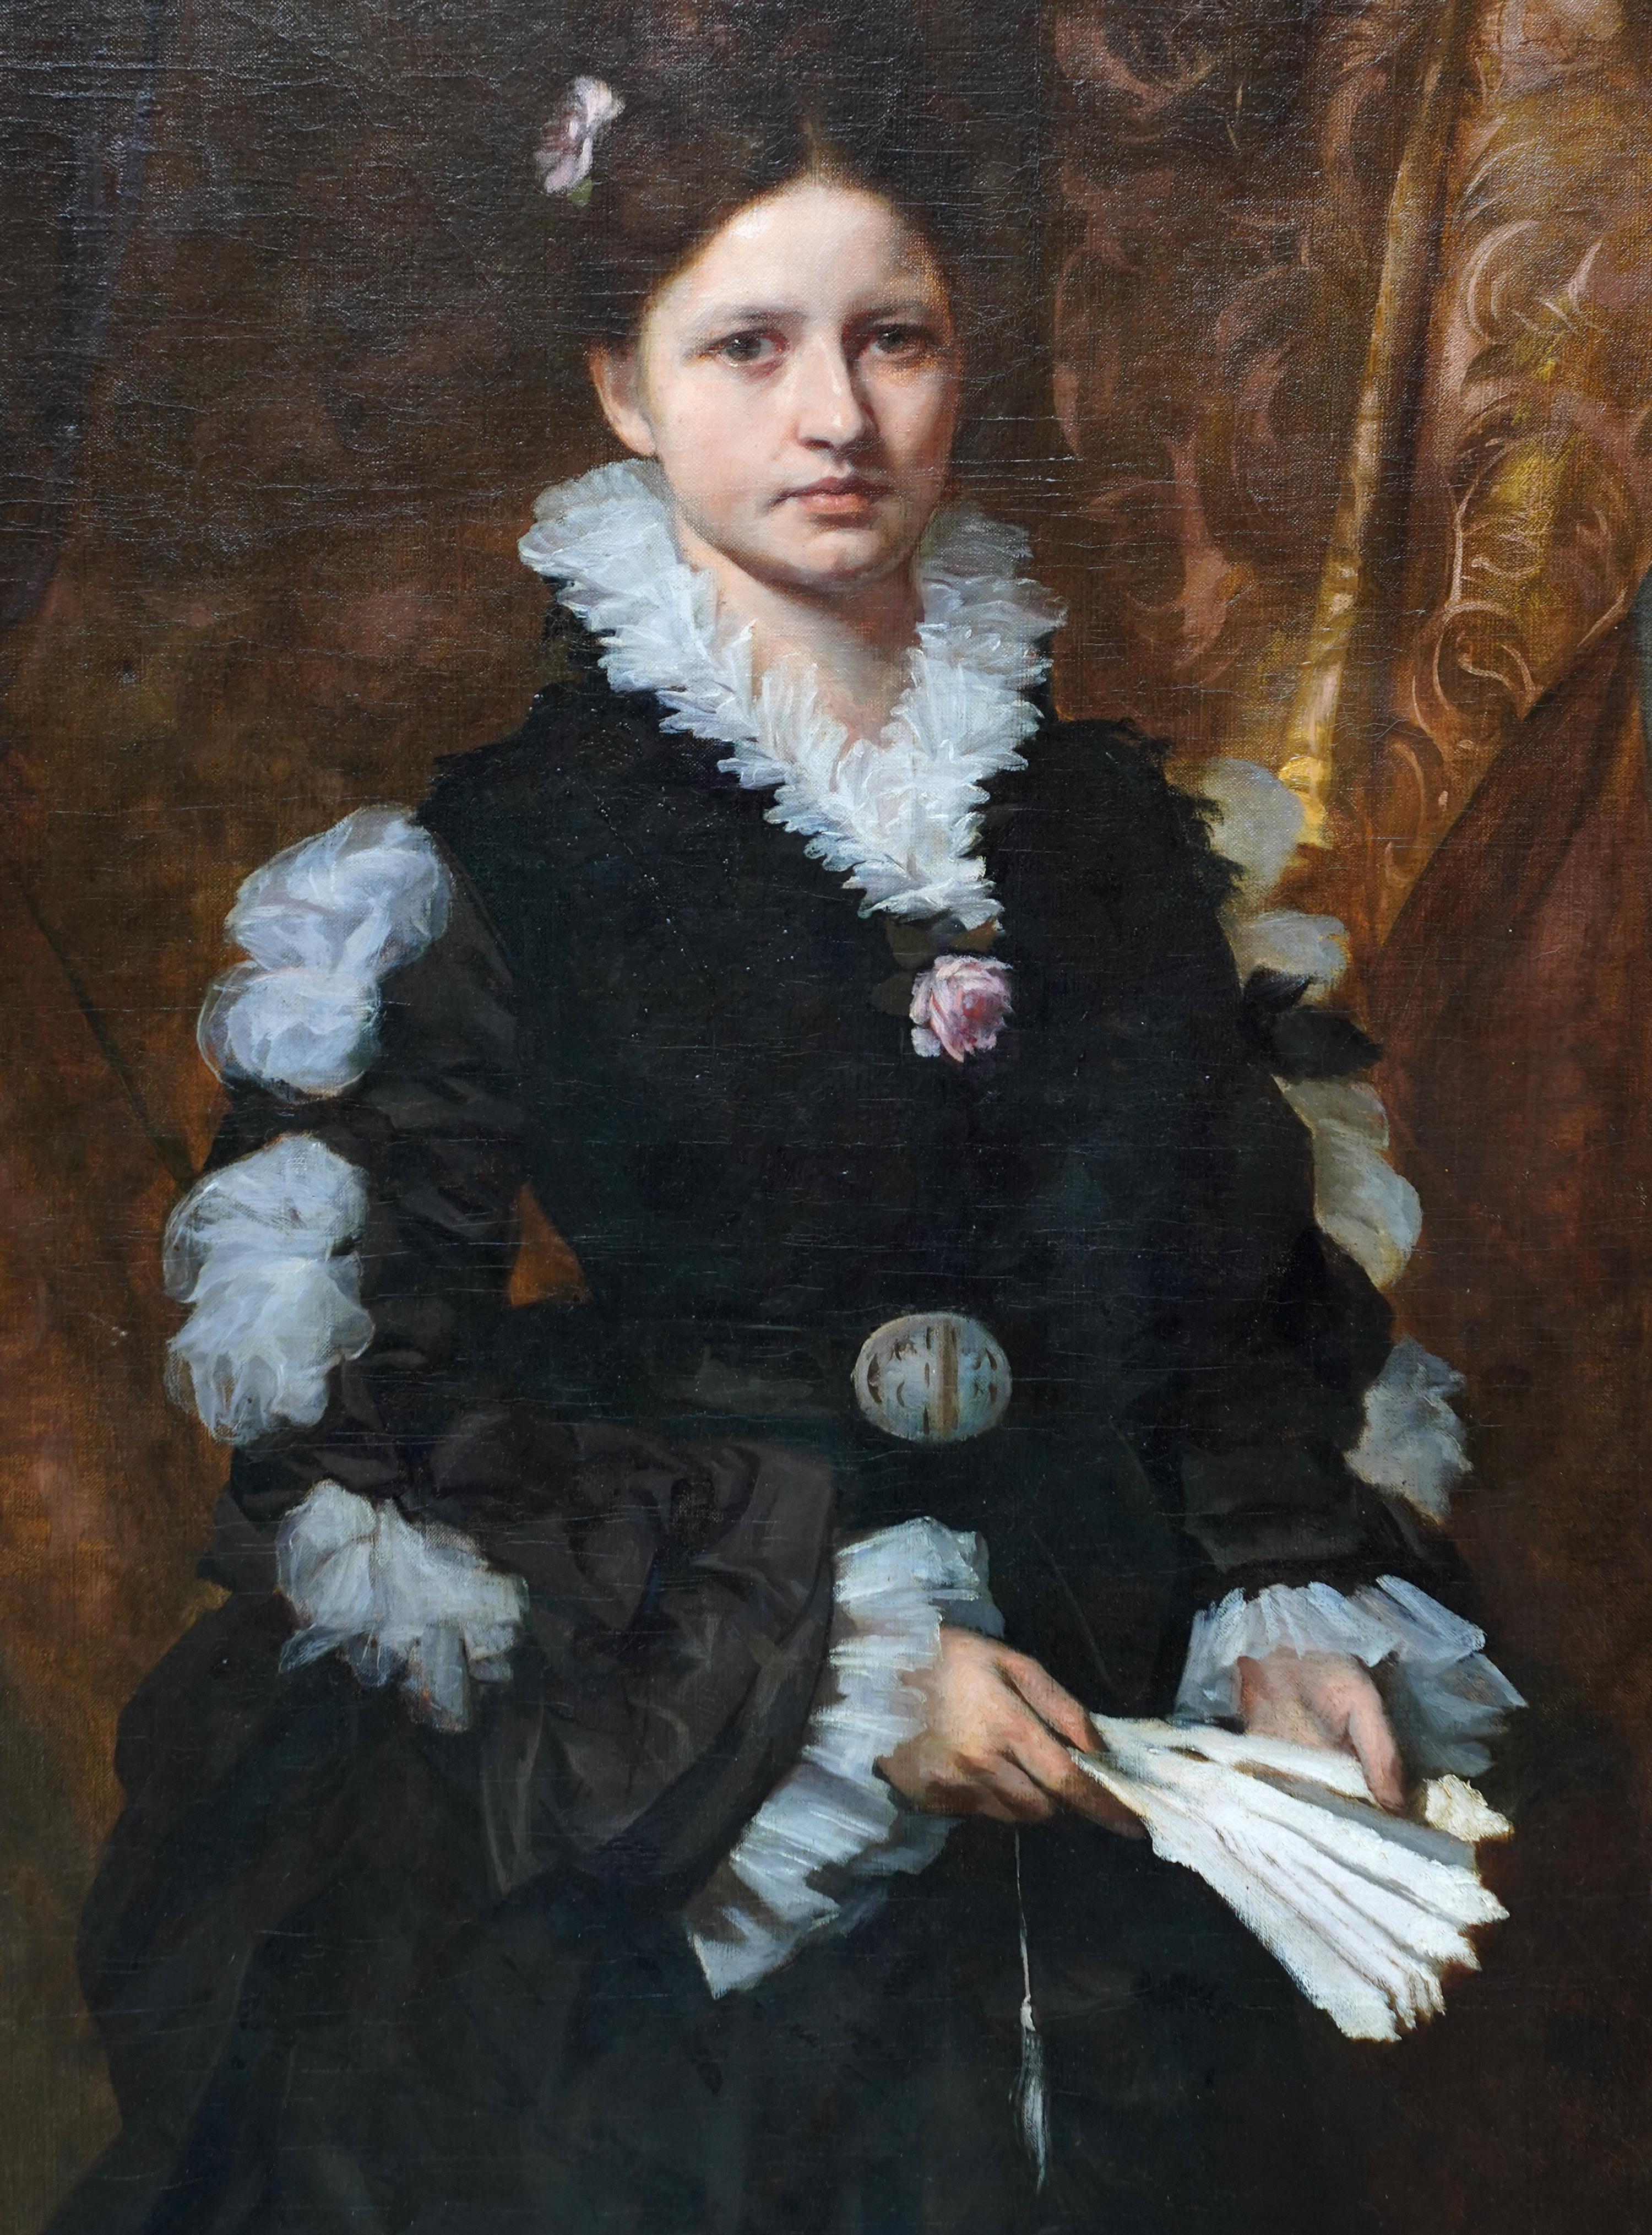 Ce magnifique grand portrait à l'huile est l'œuvre du célèbre portraitiste autrichien Eduard Veith. Peint vers 1890, il s'agit d'un portrait debout de trois quarts de la longueur d'une élégante dame de la société viennoise. Les influences du